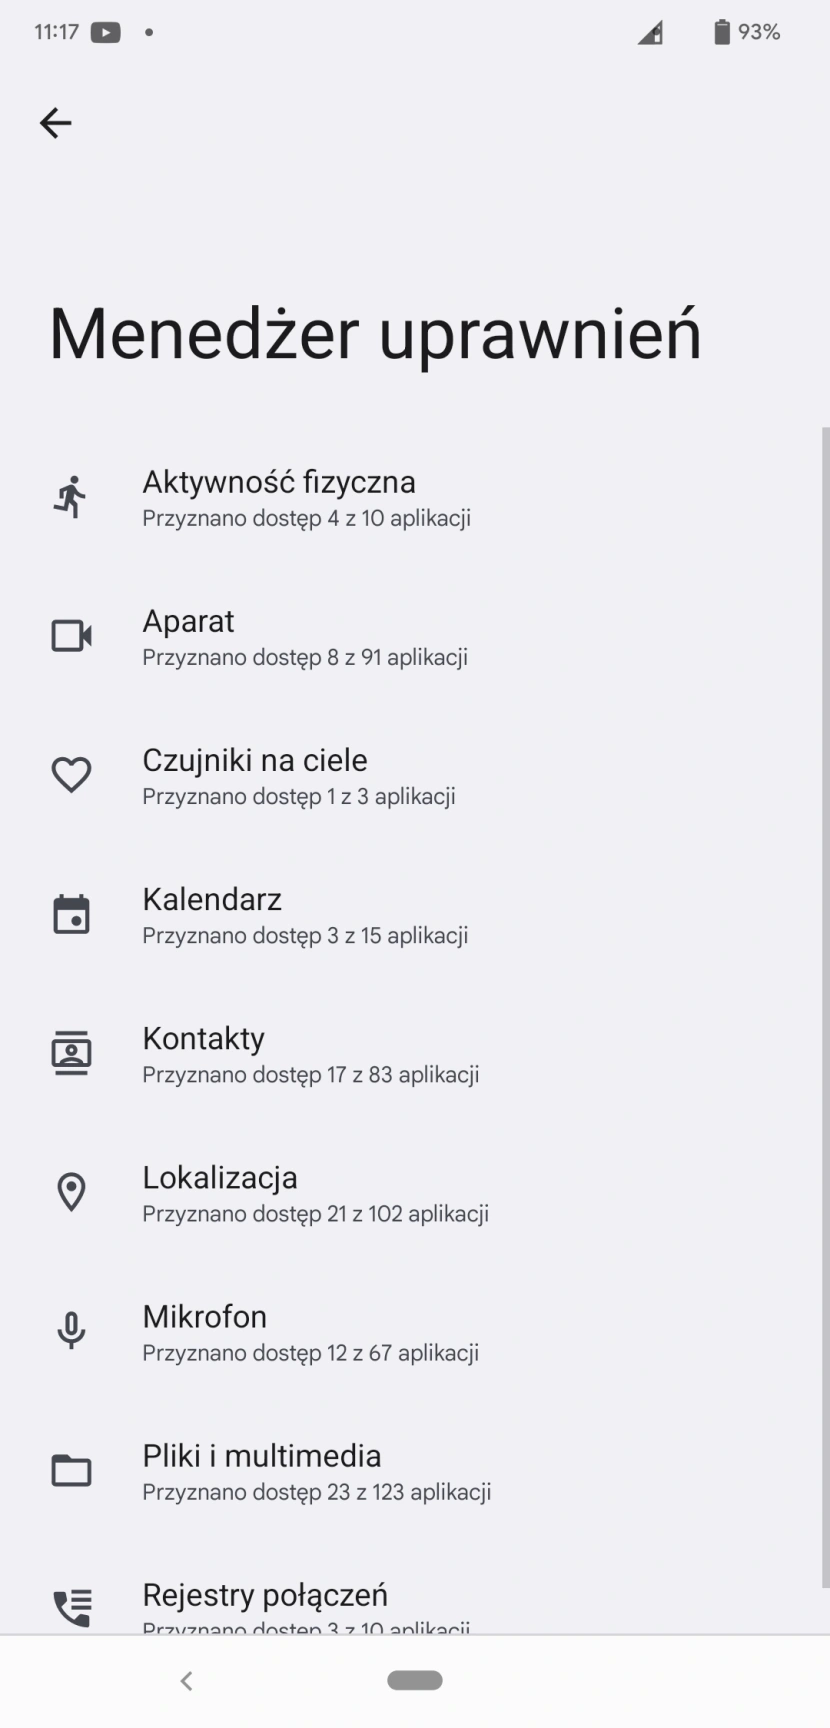 Menedżer uprawnień w Androidzie 12
fot. Daniel Olszewski / Computerworld.pl